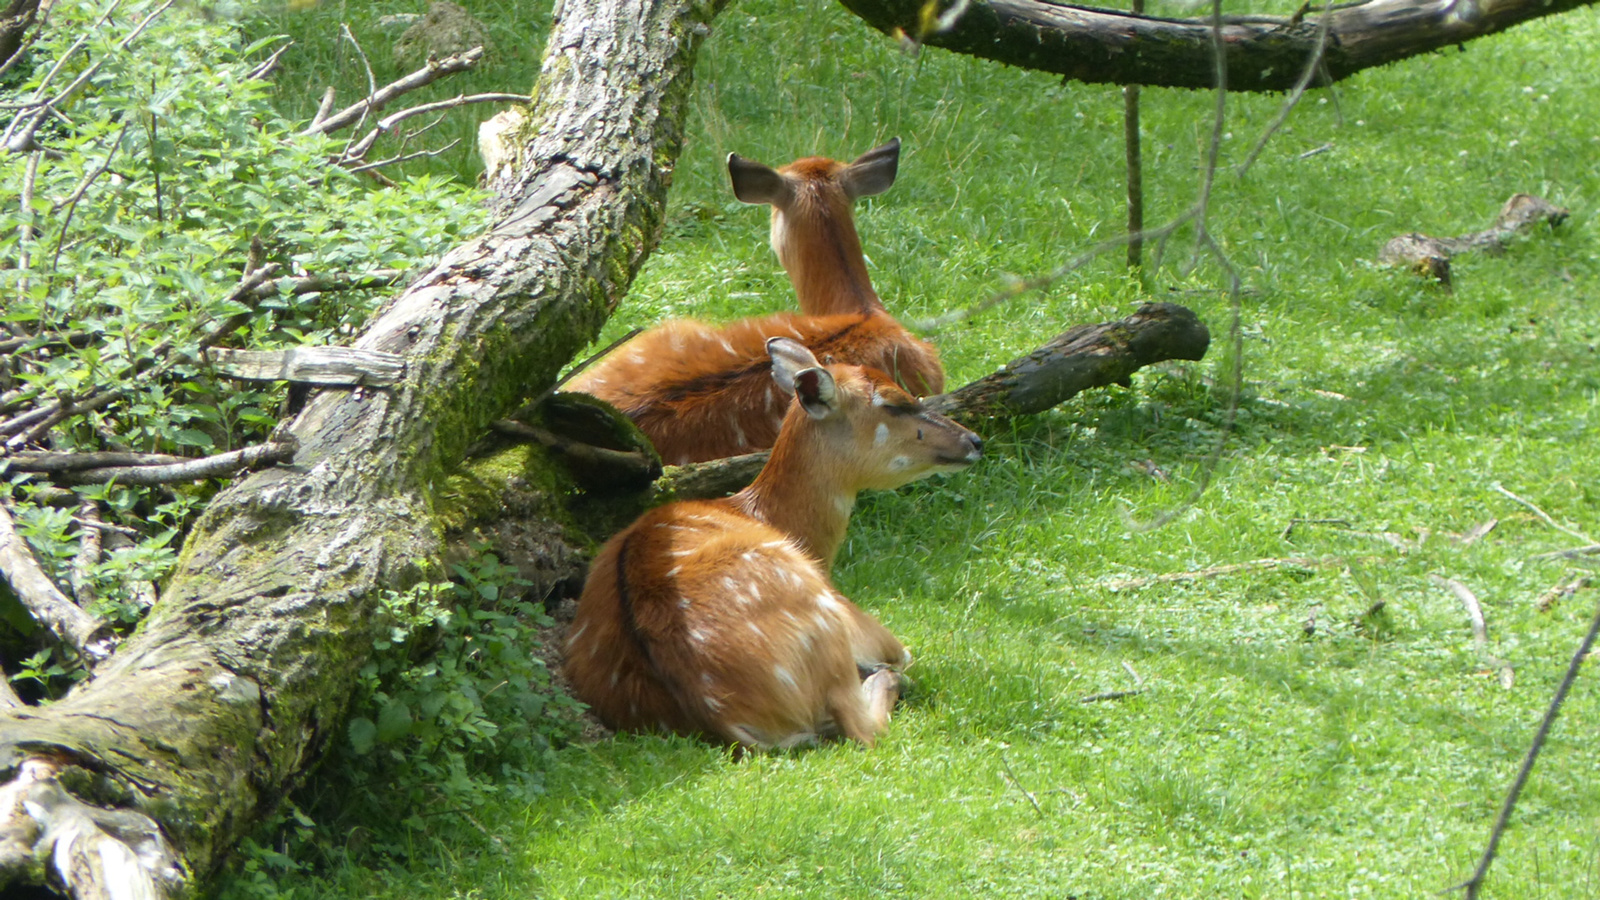 Salzburg, Hellbrunn, állatkert (zoo), SzG3